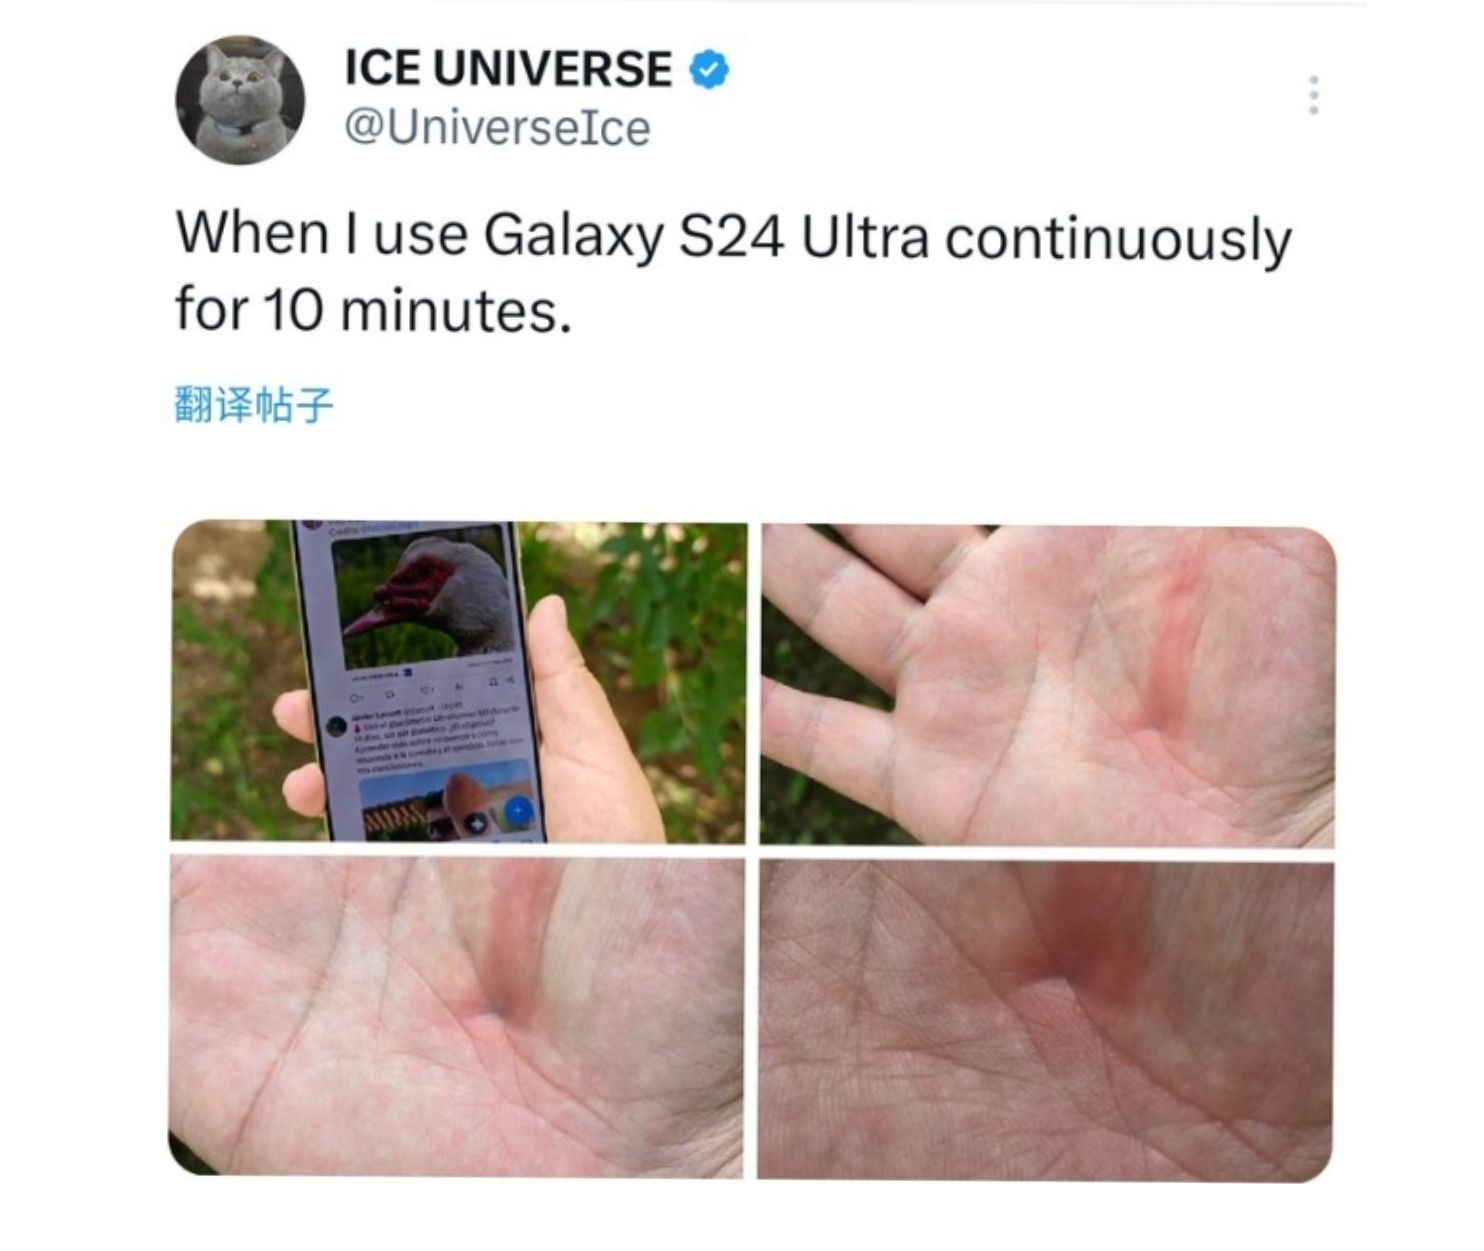 Bekas pemakaian Samsung Galaxy S24 Ultra di telapak tangan.